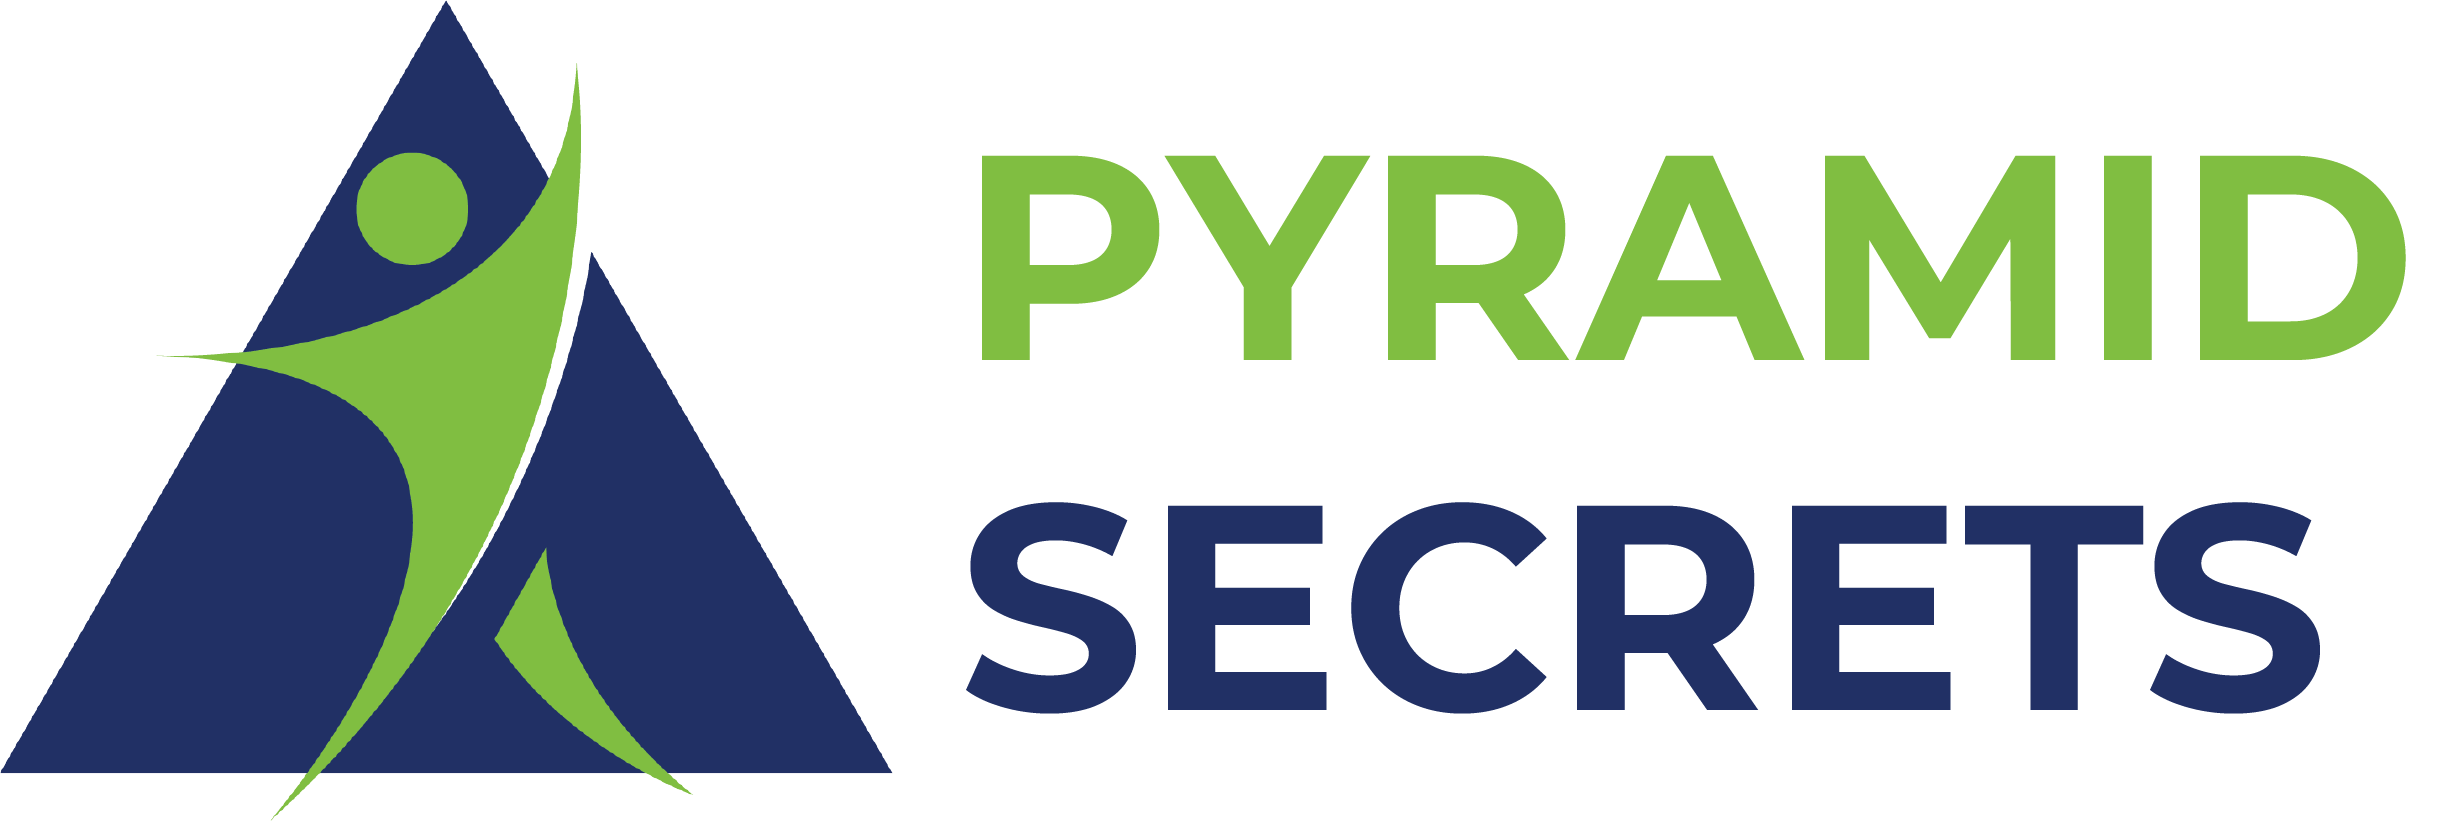 Pyramids Secret